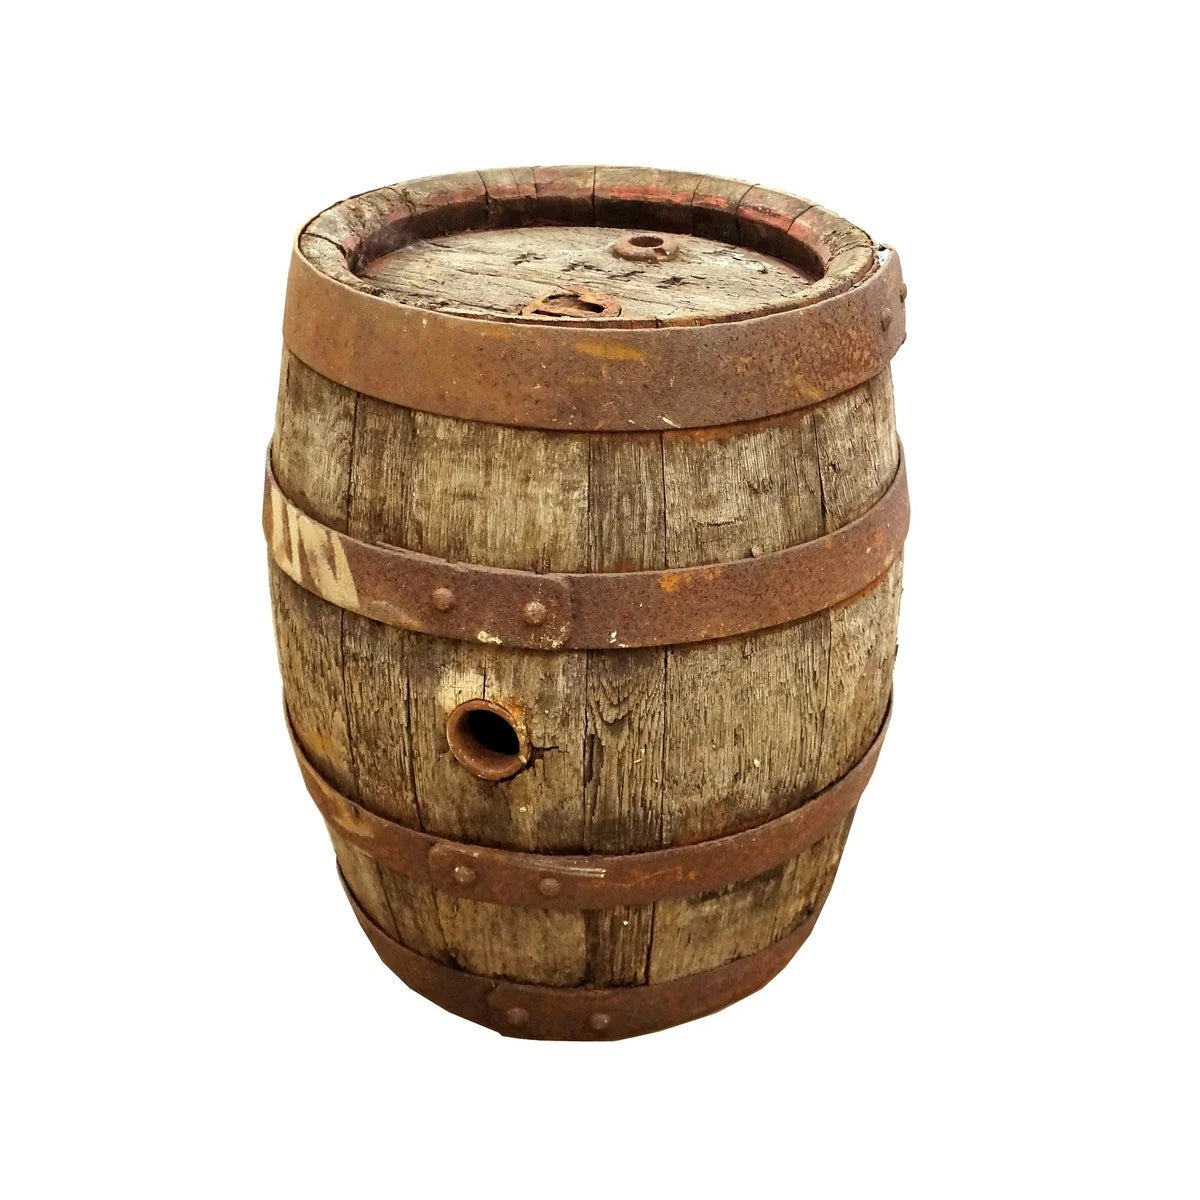 Antique European wine barrel